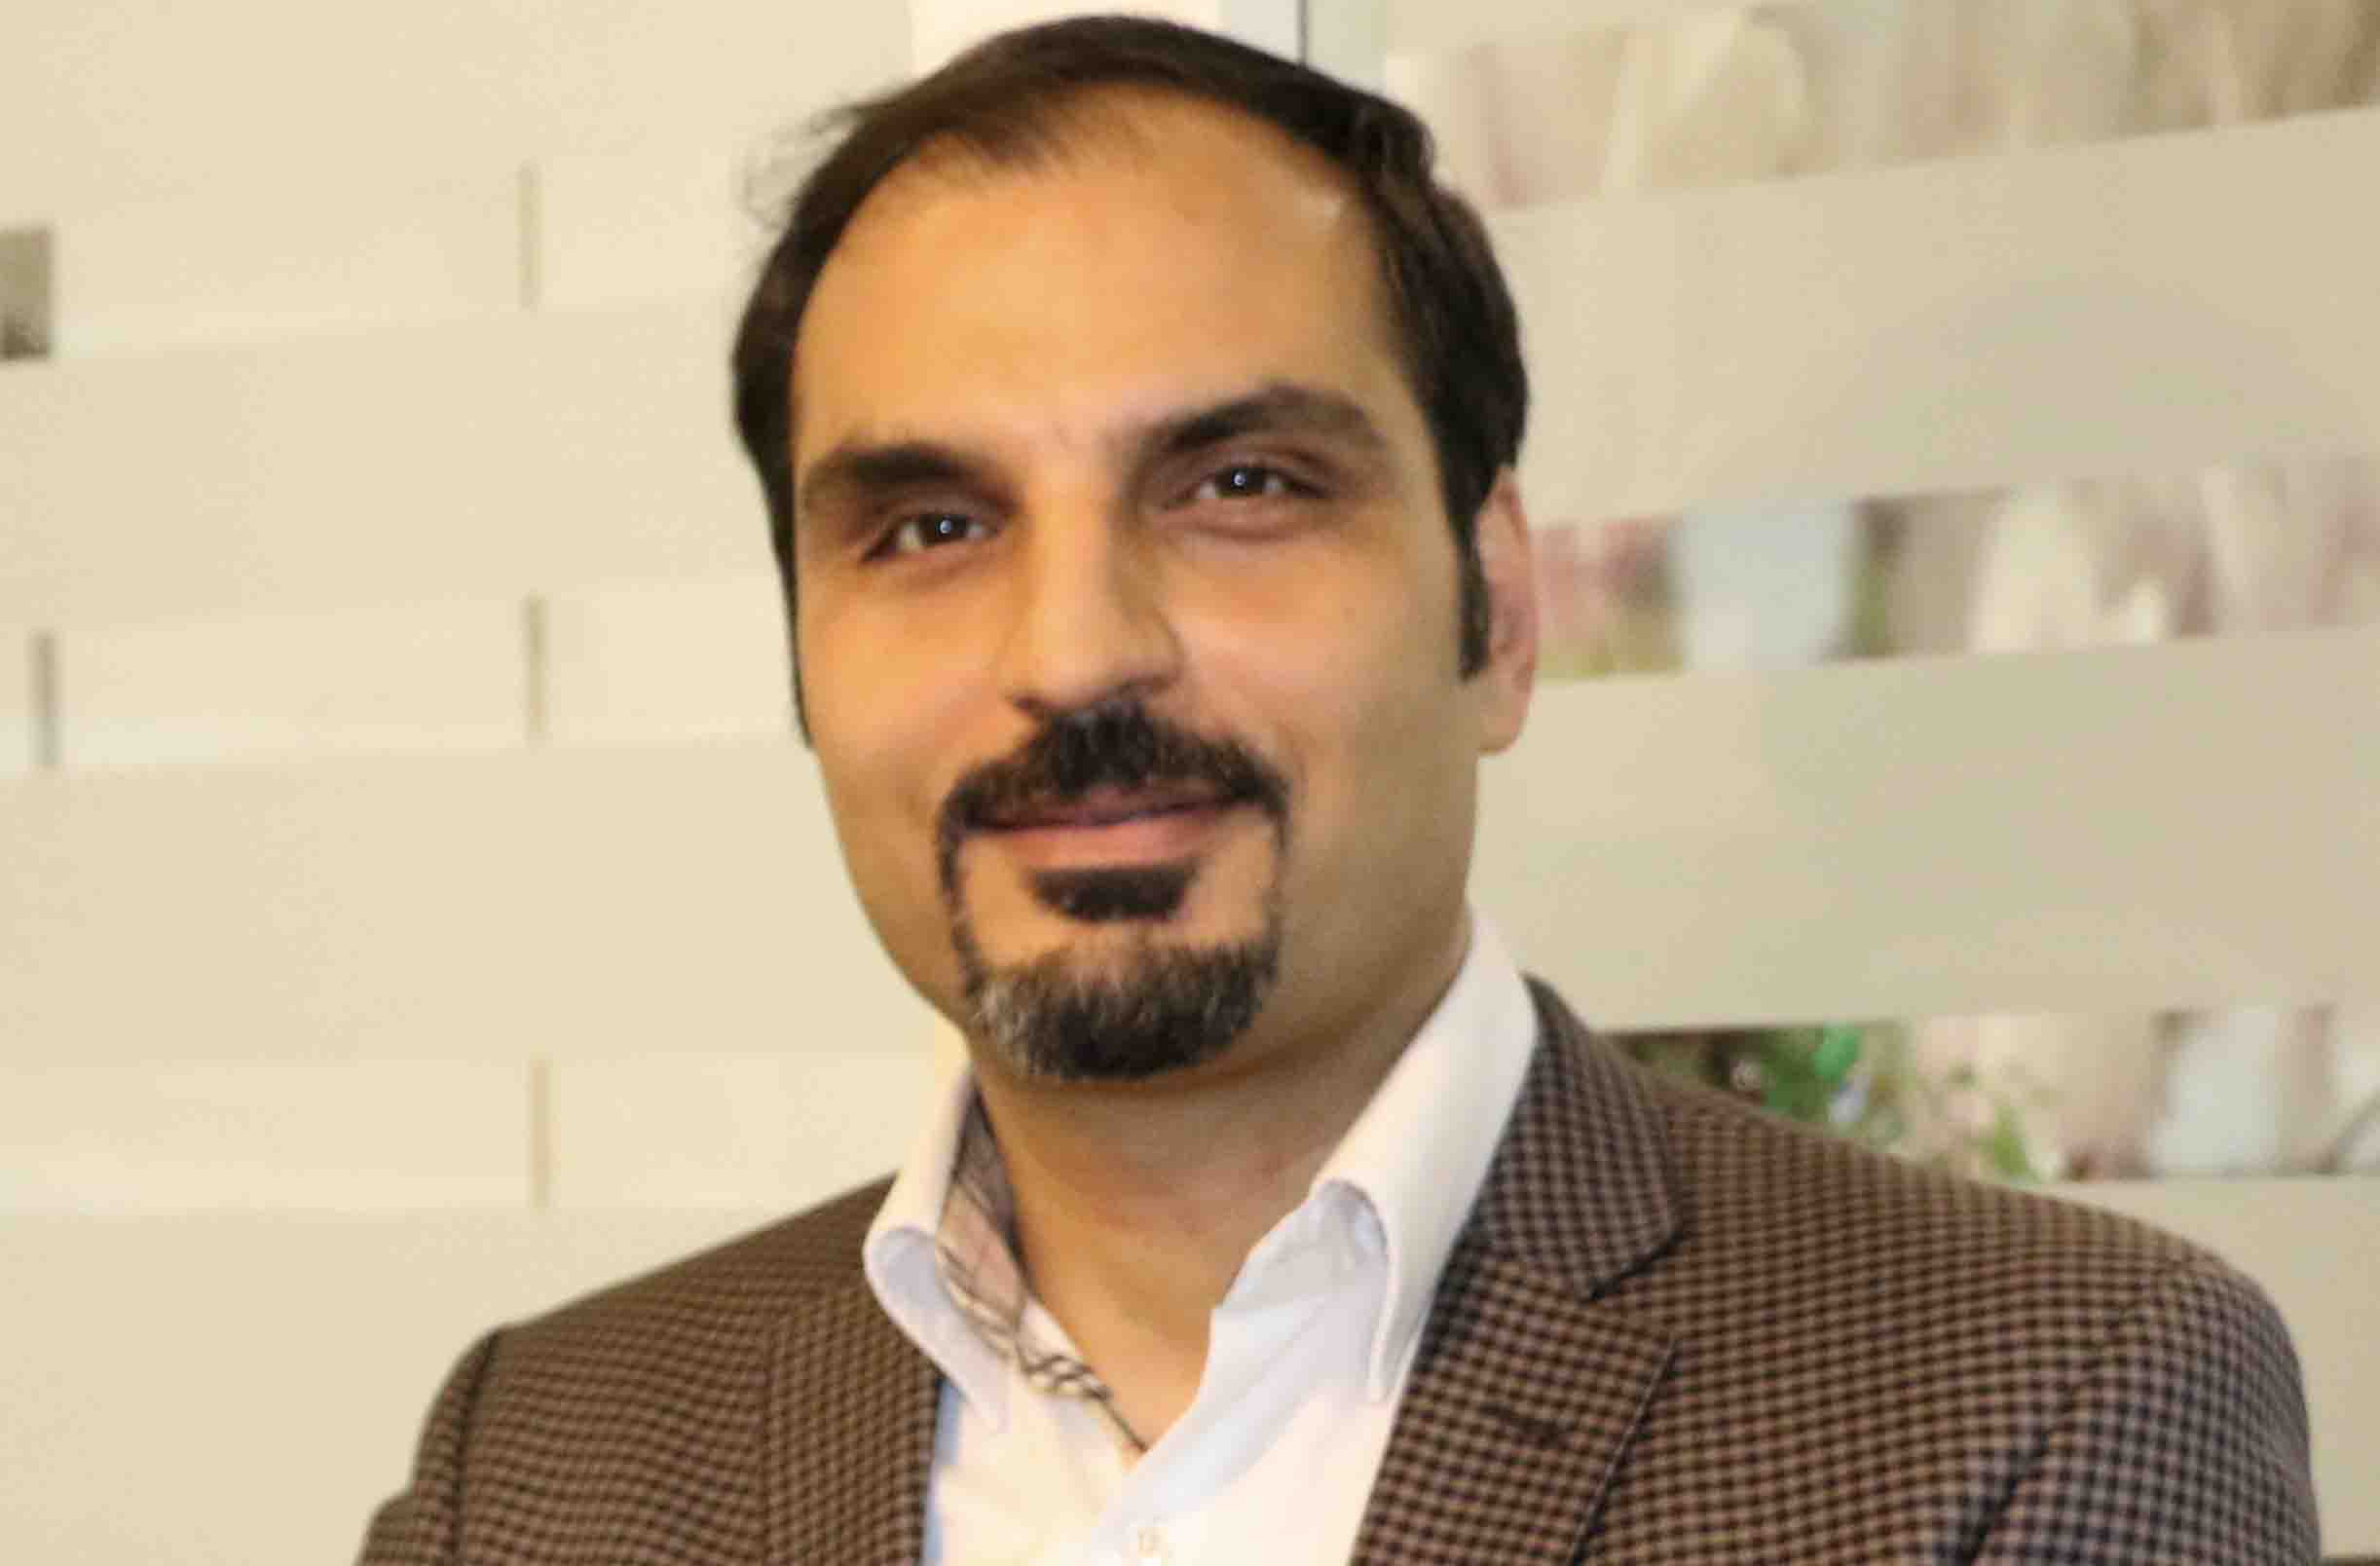 احمد شکوهی سرپرست معاونت امور مشتریان و توسعه بازار بیمه دی شد